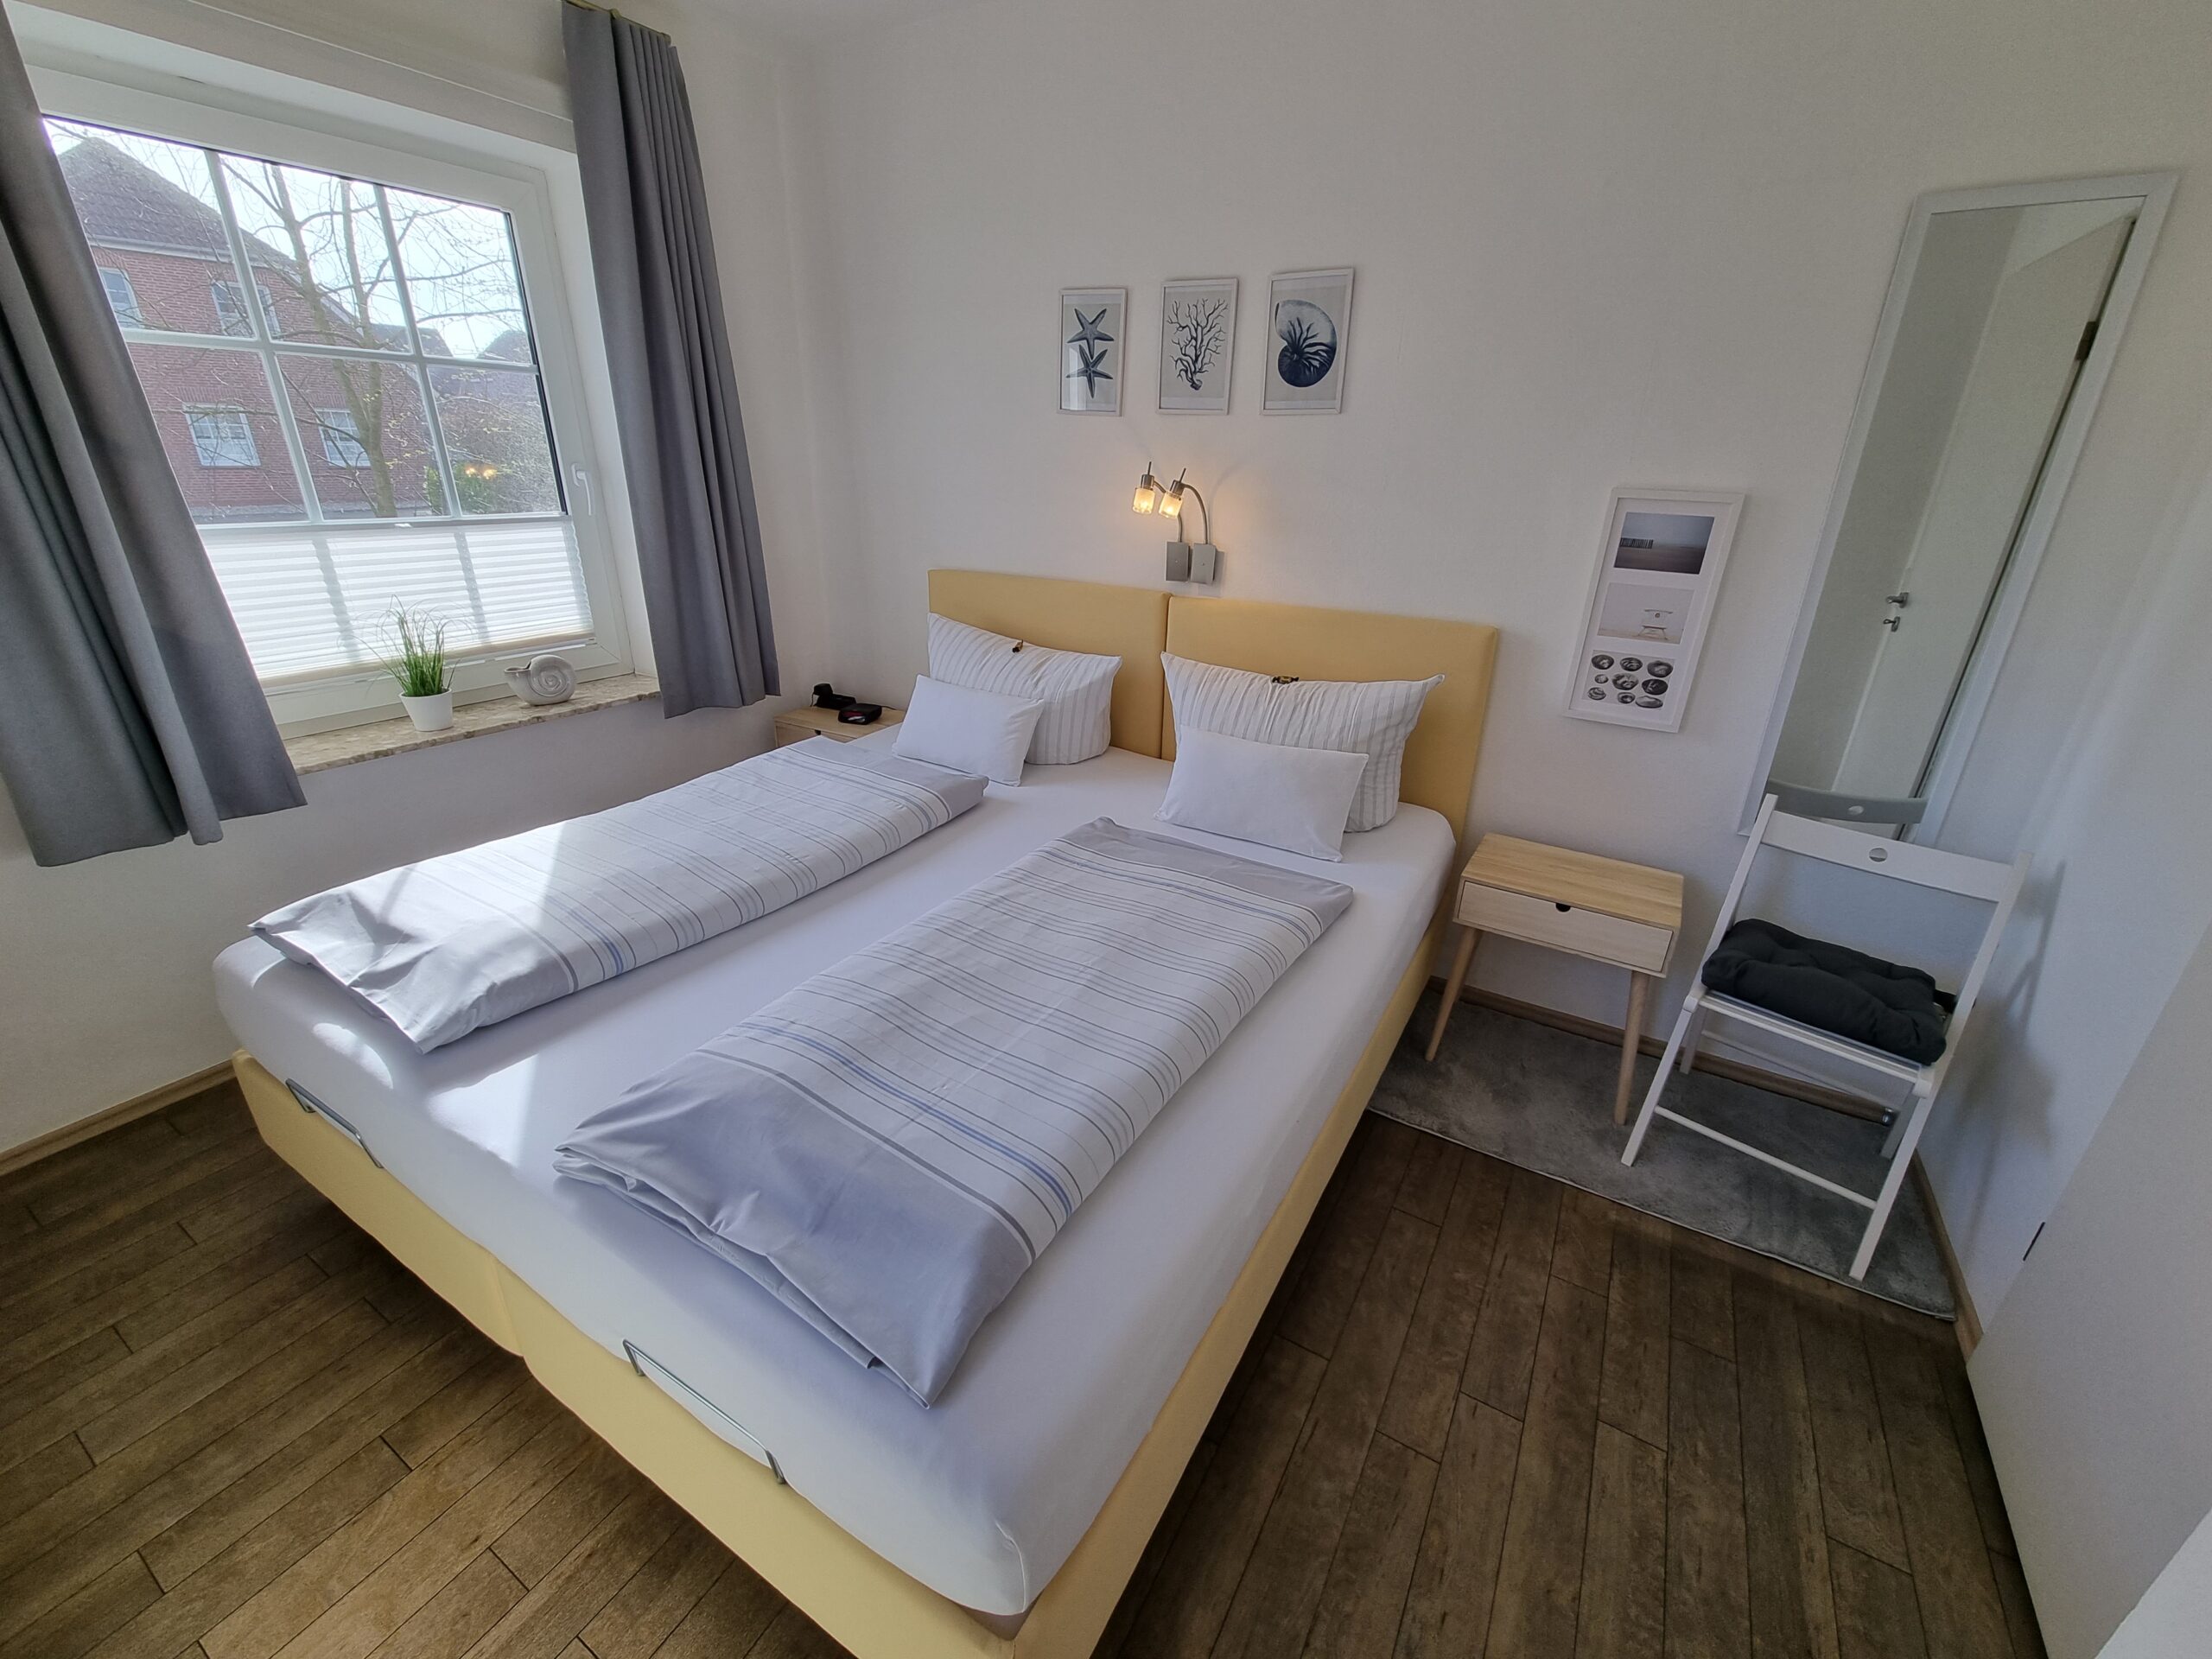 Separater Schlafbereich mit Doppelbett im Hotel Friesenhuus mit Blick auf ein Fenster